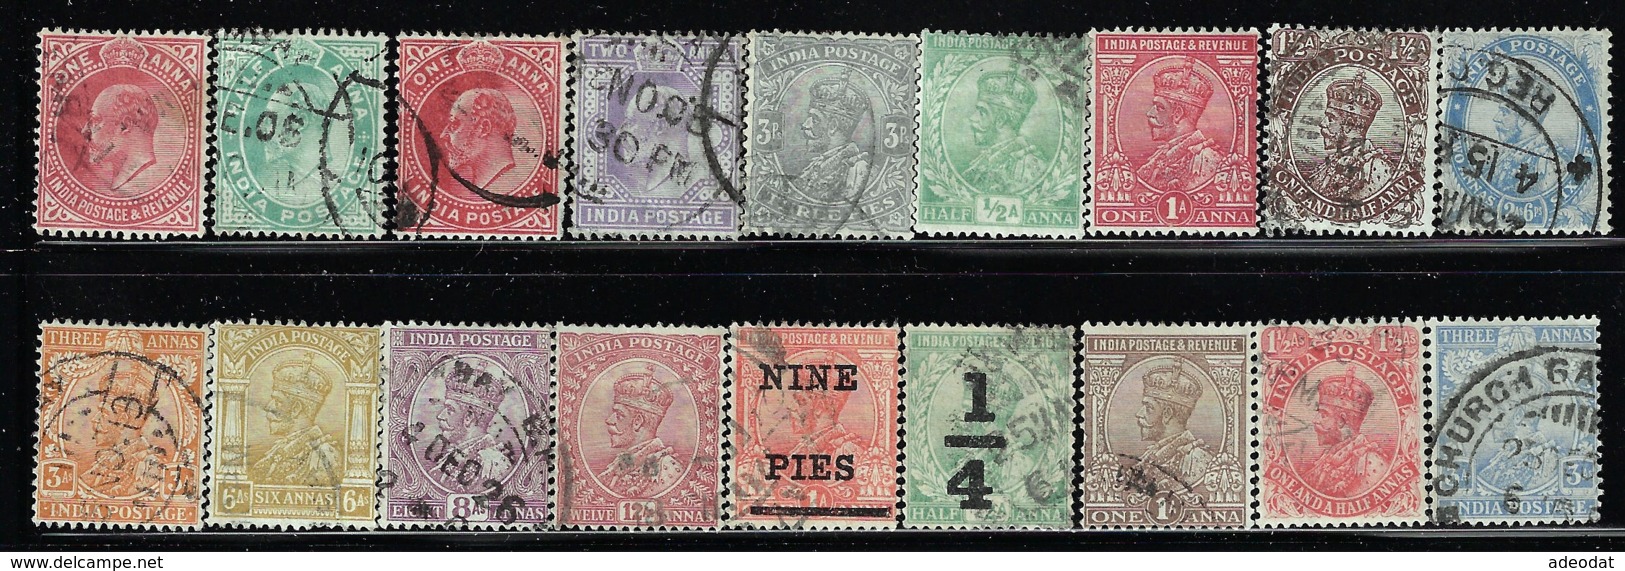 INDIA 1902-1906 SCOTT 61-63,79,89,102,104 CANCELLED CATALOG VALUE US $9.75 - Collezioni & Lotti